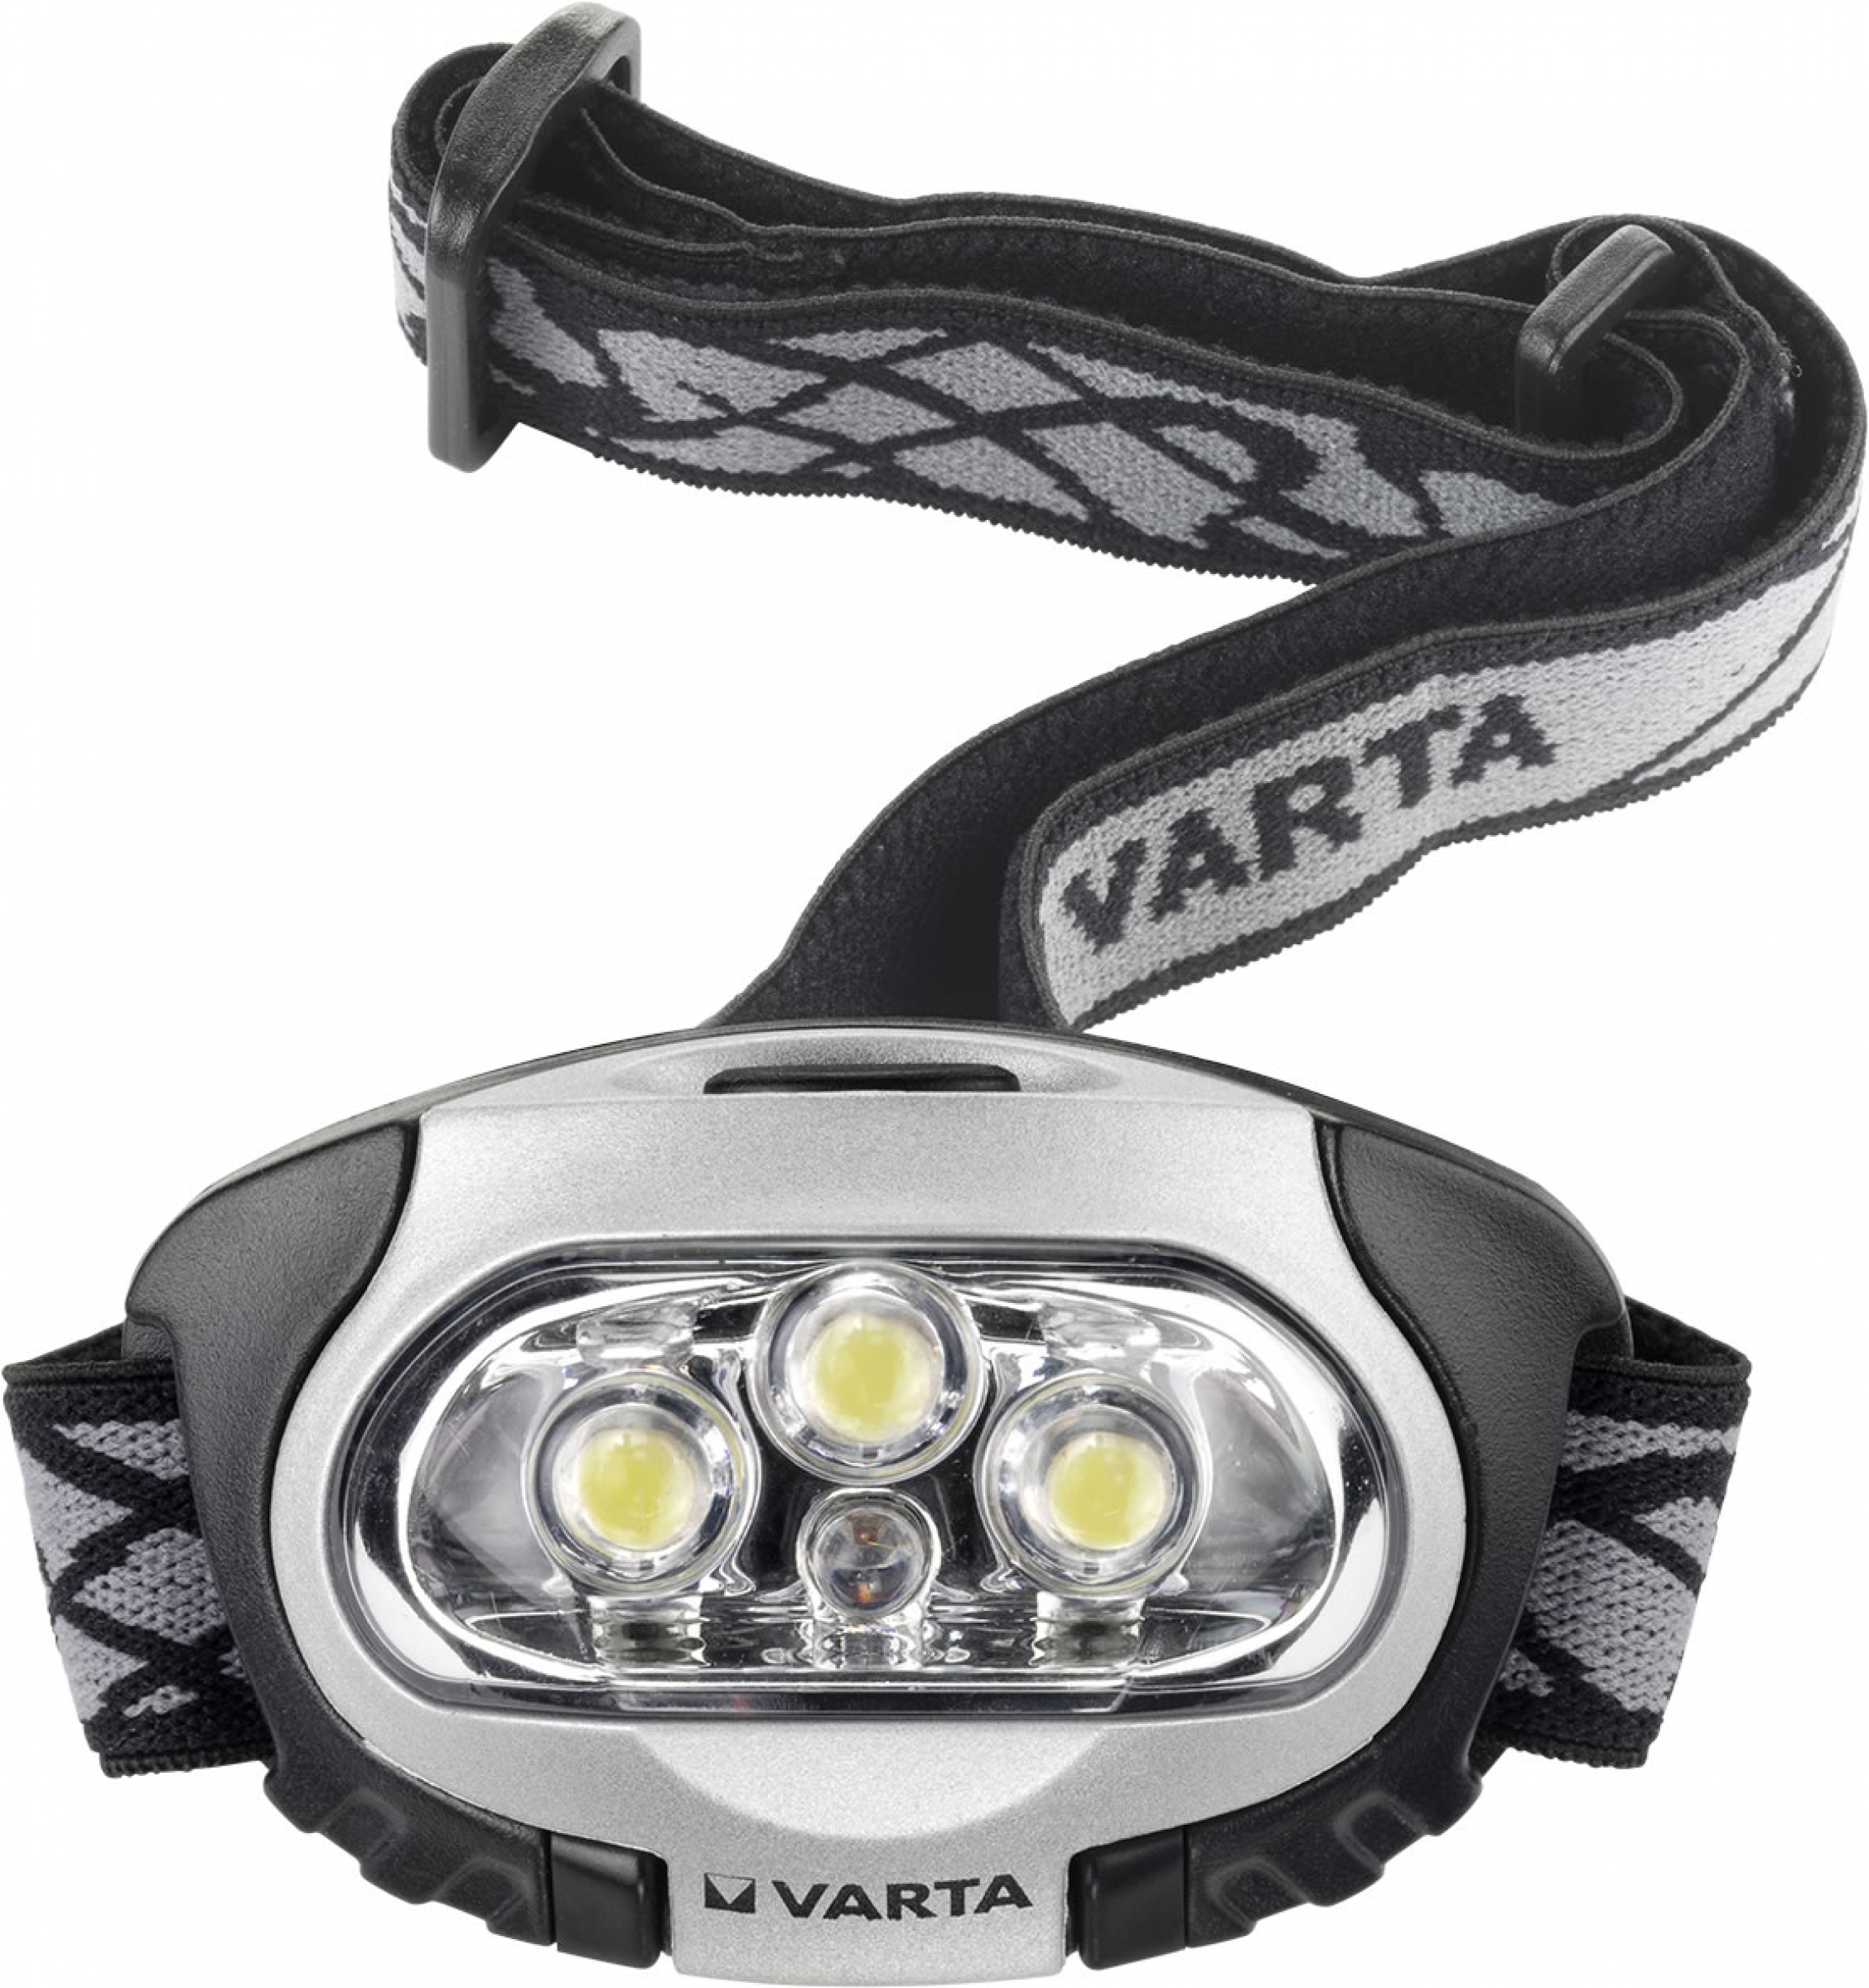 Varta 2003-R03-Micro-AAA Superlife 4er Blister